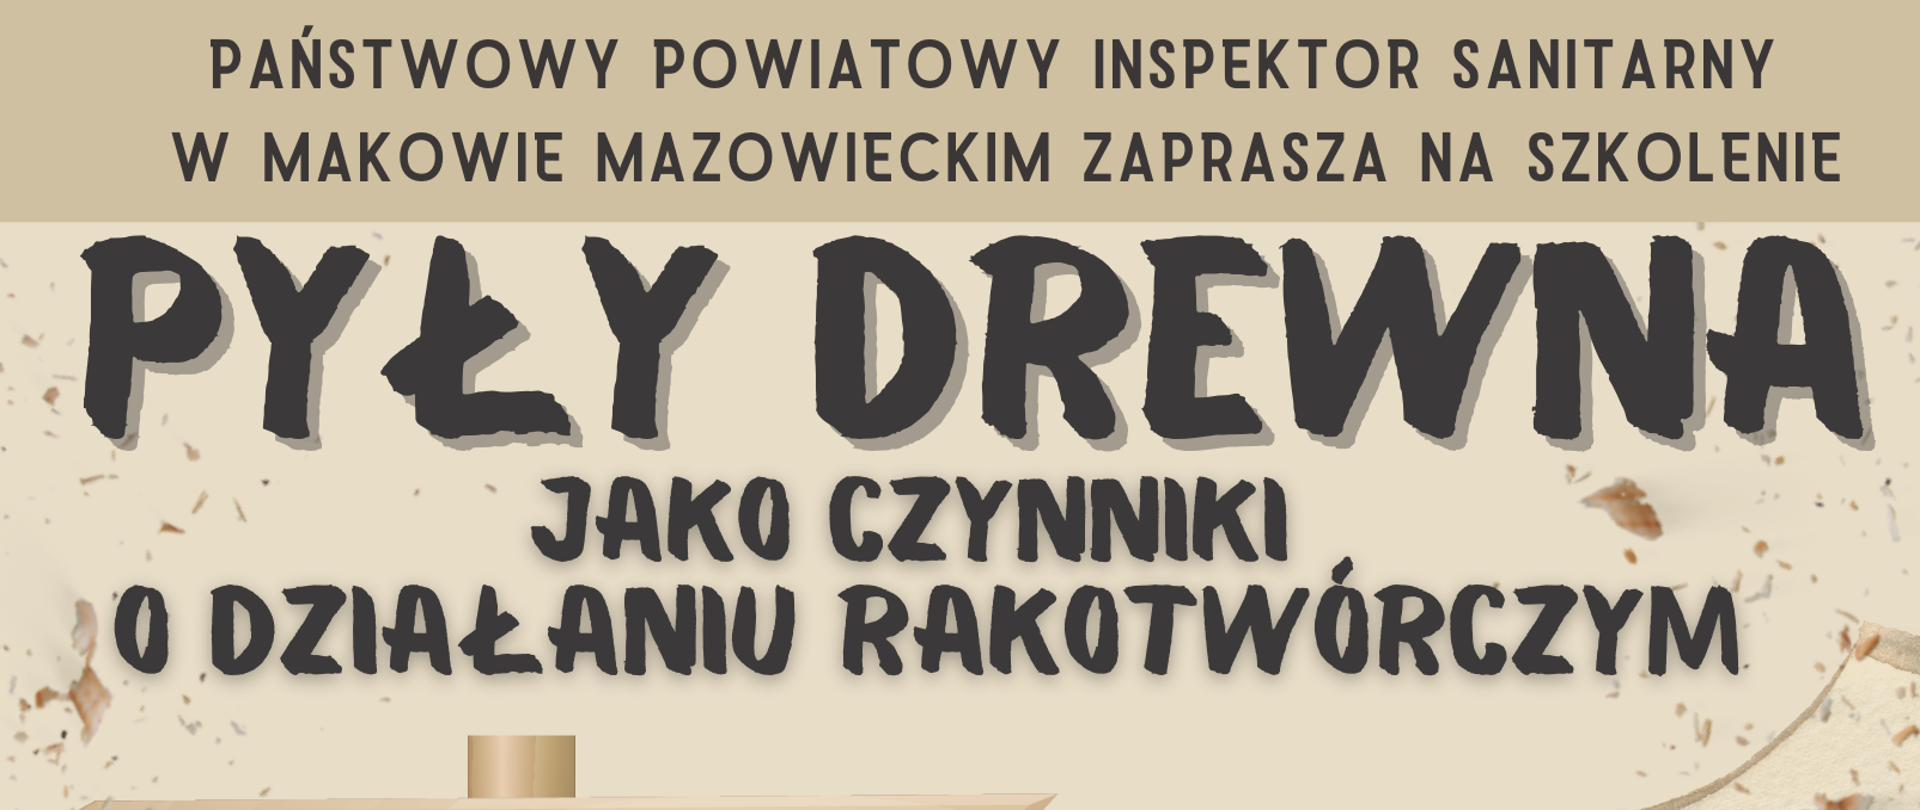 Plakat informujący o zorganizowaniu szkolenia przez PPIS w Makowie Mazowieckim pt. "Pyły drewna jako czynniki o działaniu rakotwórczym" dnia 15 listopada 2023 r. o godz. 10.00.